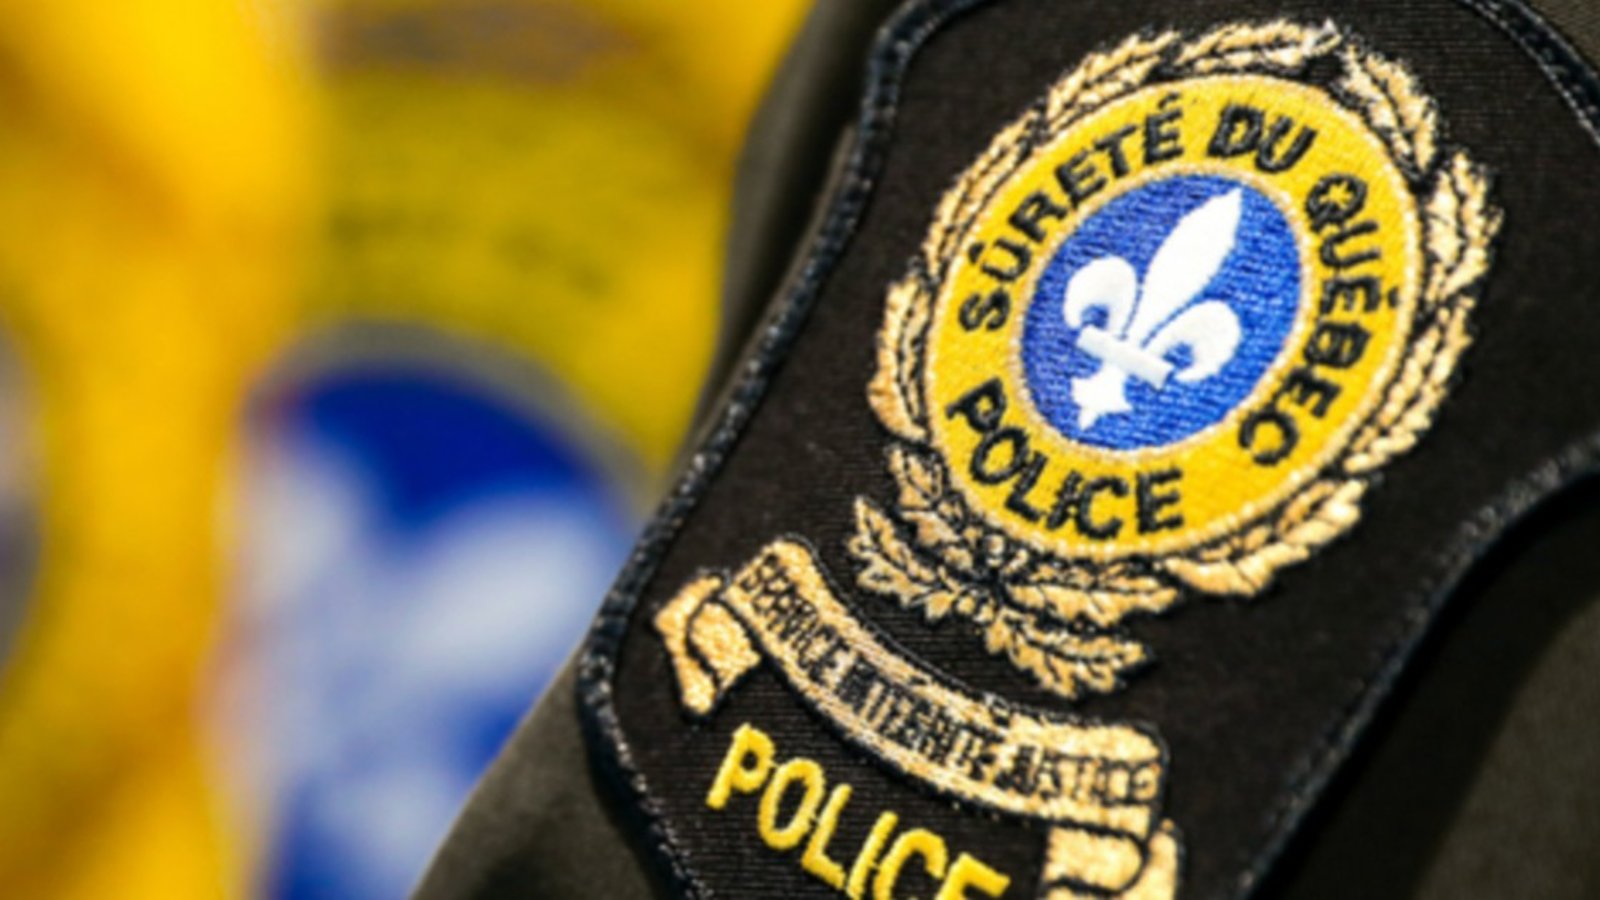 L'enfant de 3 ans enlevé dans le Bas-St-Laurent retrouvé sain et sauf